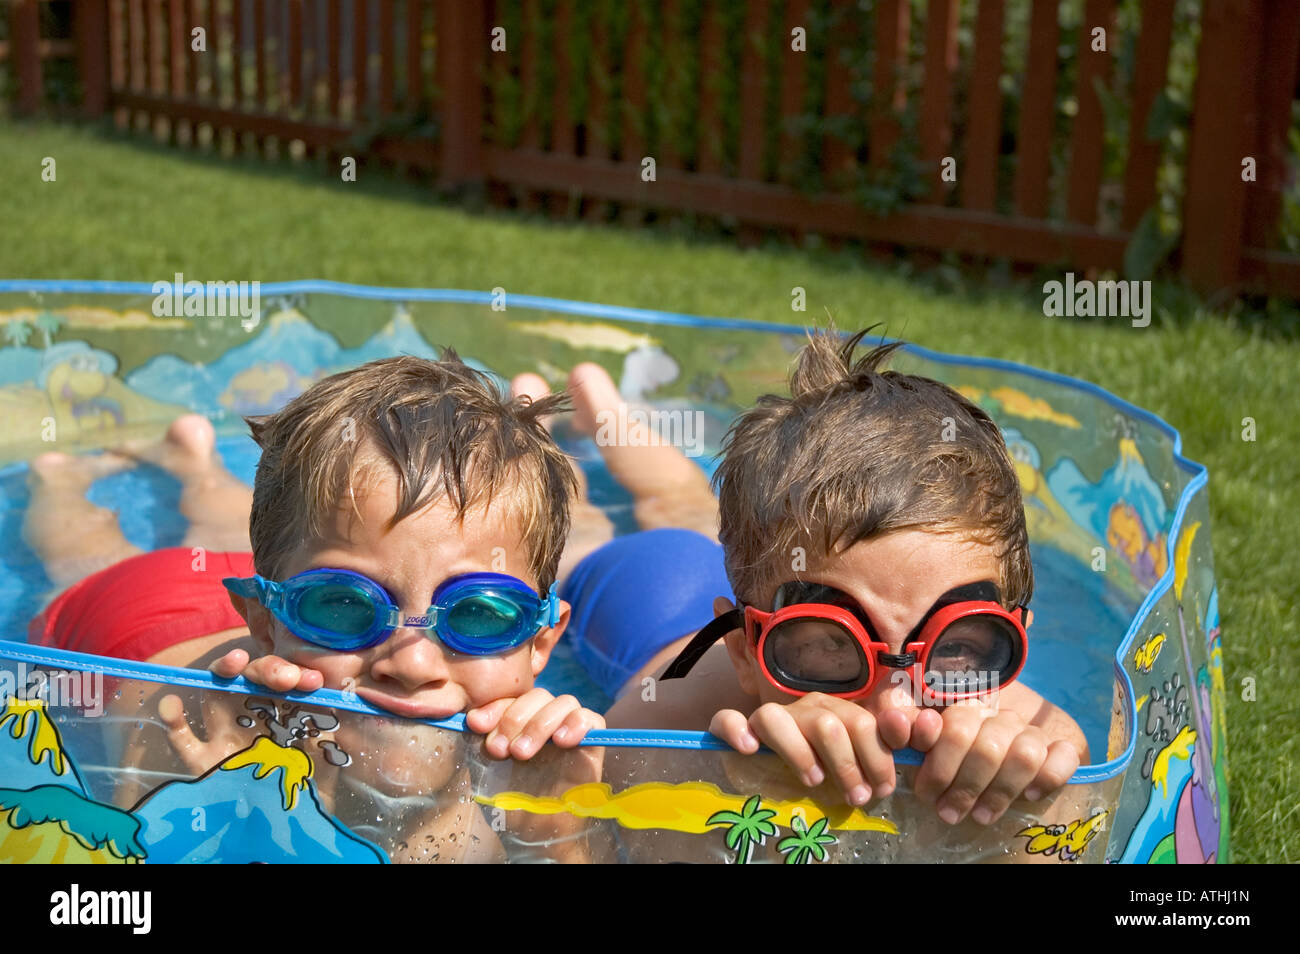 zwei kleine Jungs in einem Planschbecken im Garten liegend Stockfoto